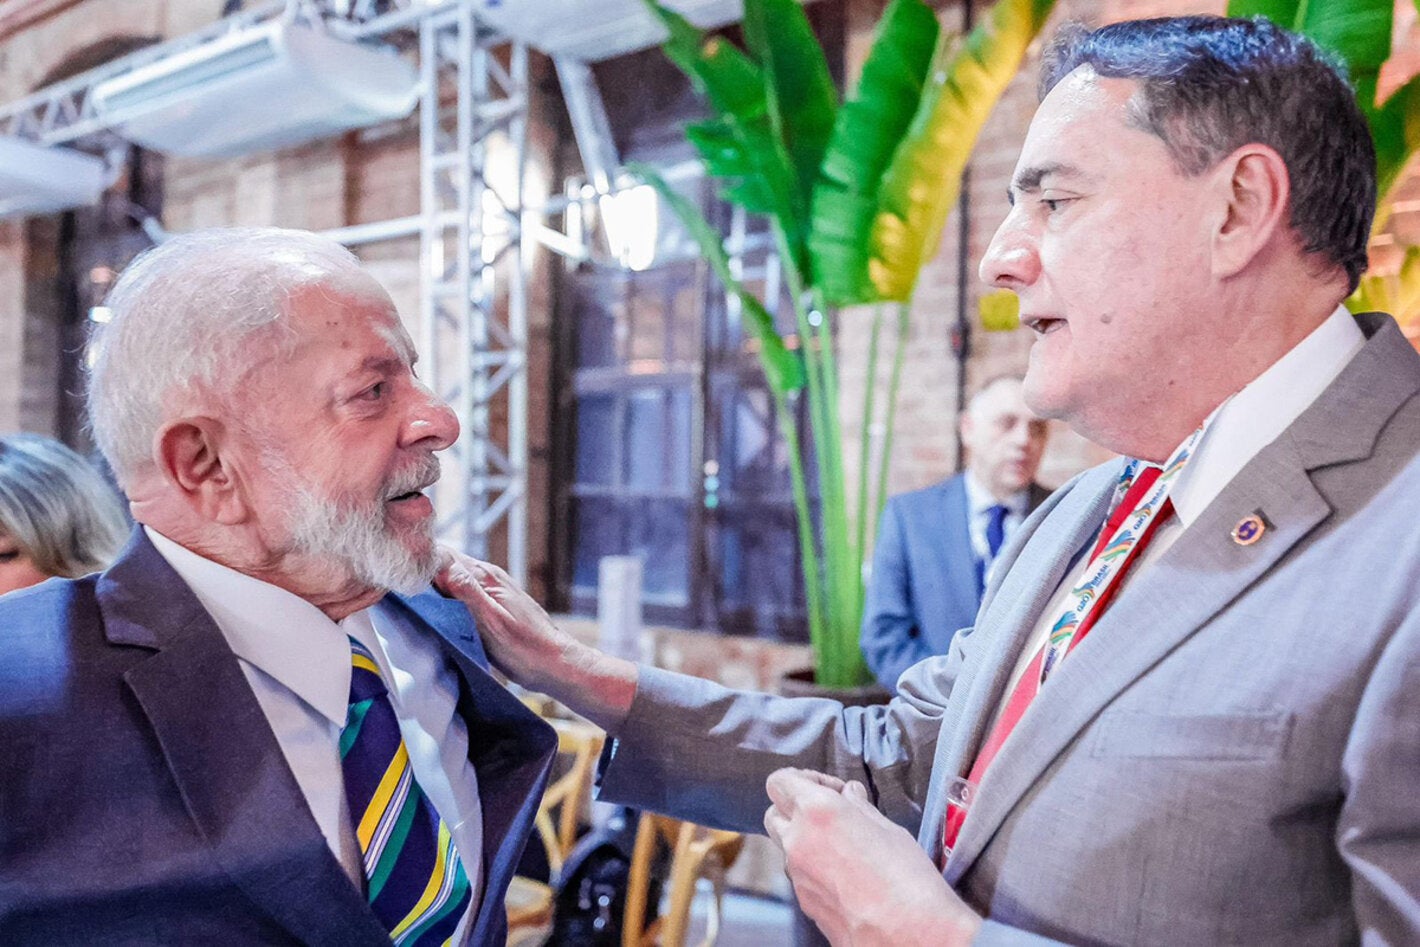 Jarbas Barbossa speaking with Luiz Inácio Lula da Silva